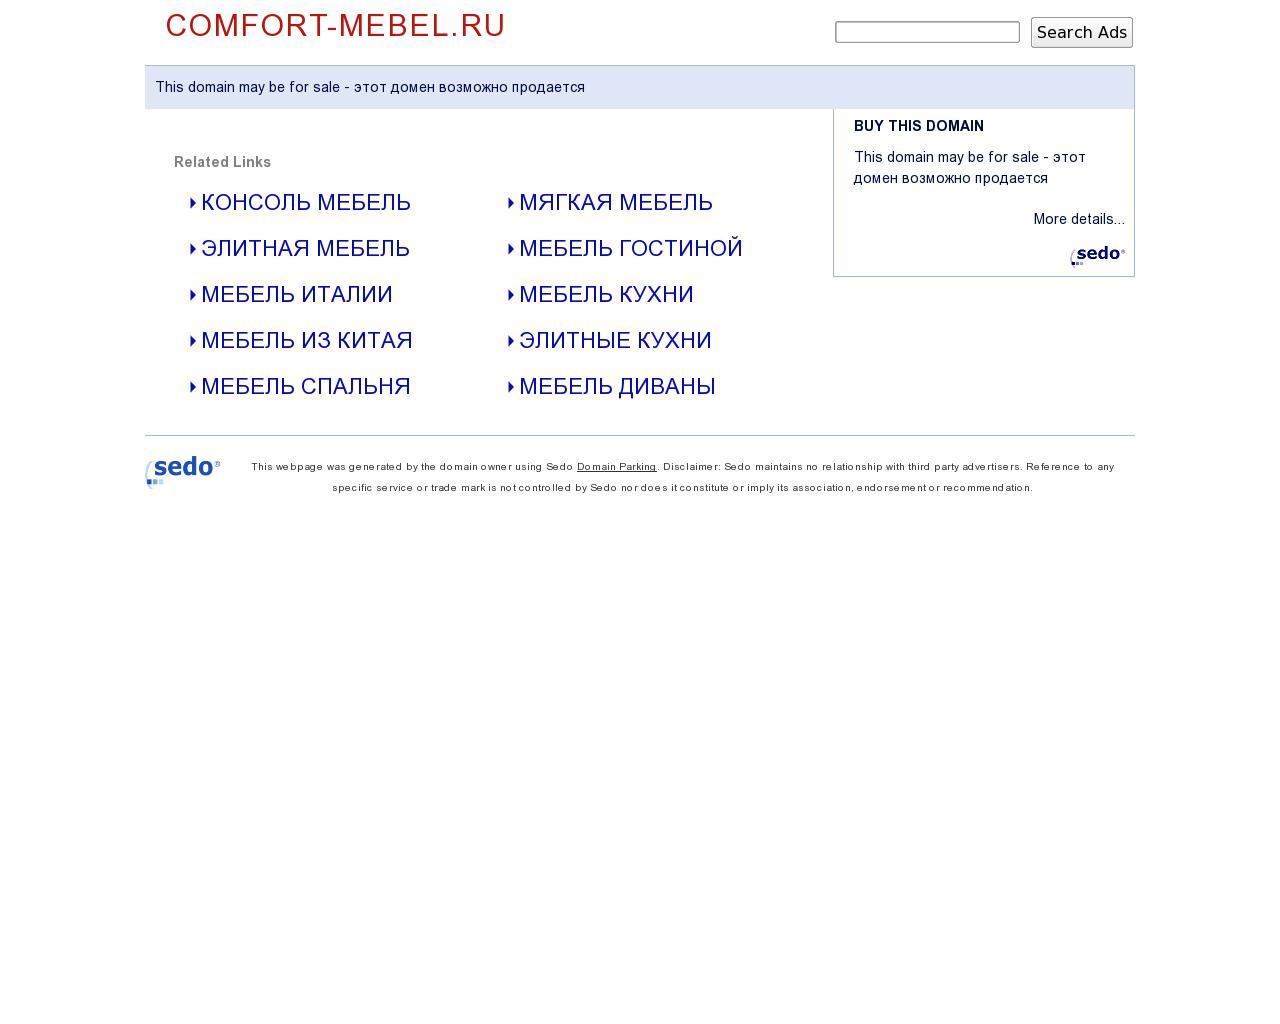 Изображение сайта comfort-mebel.ru в разрешении 1280x1024